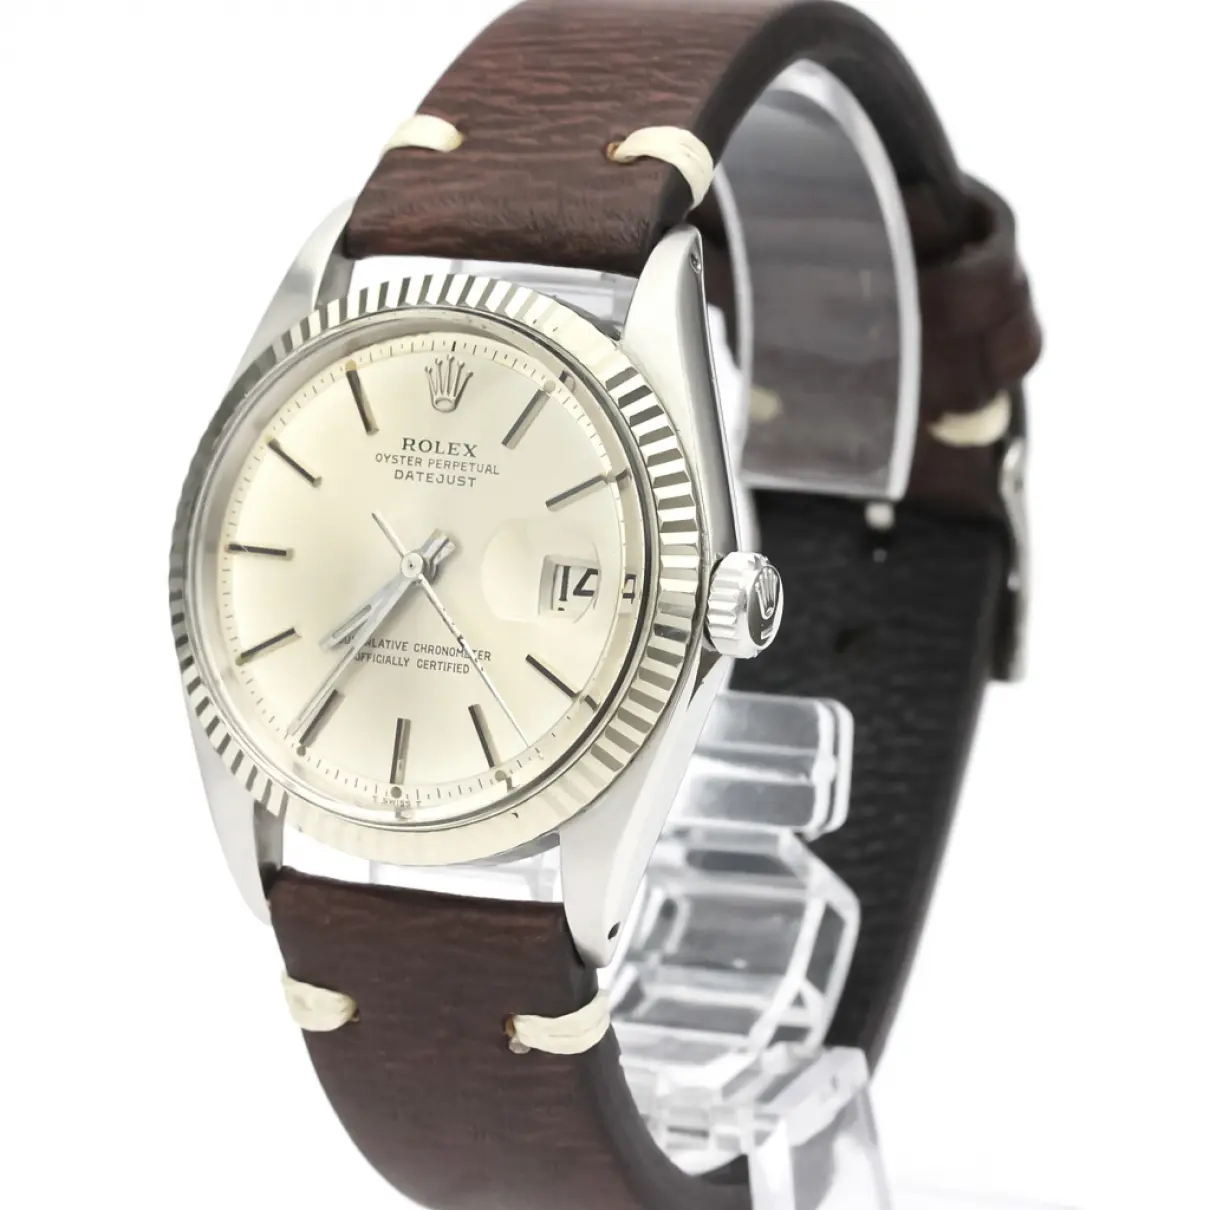 Buy Rolex Datejust 36mm watch online